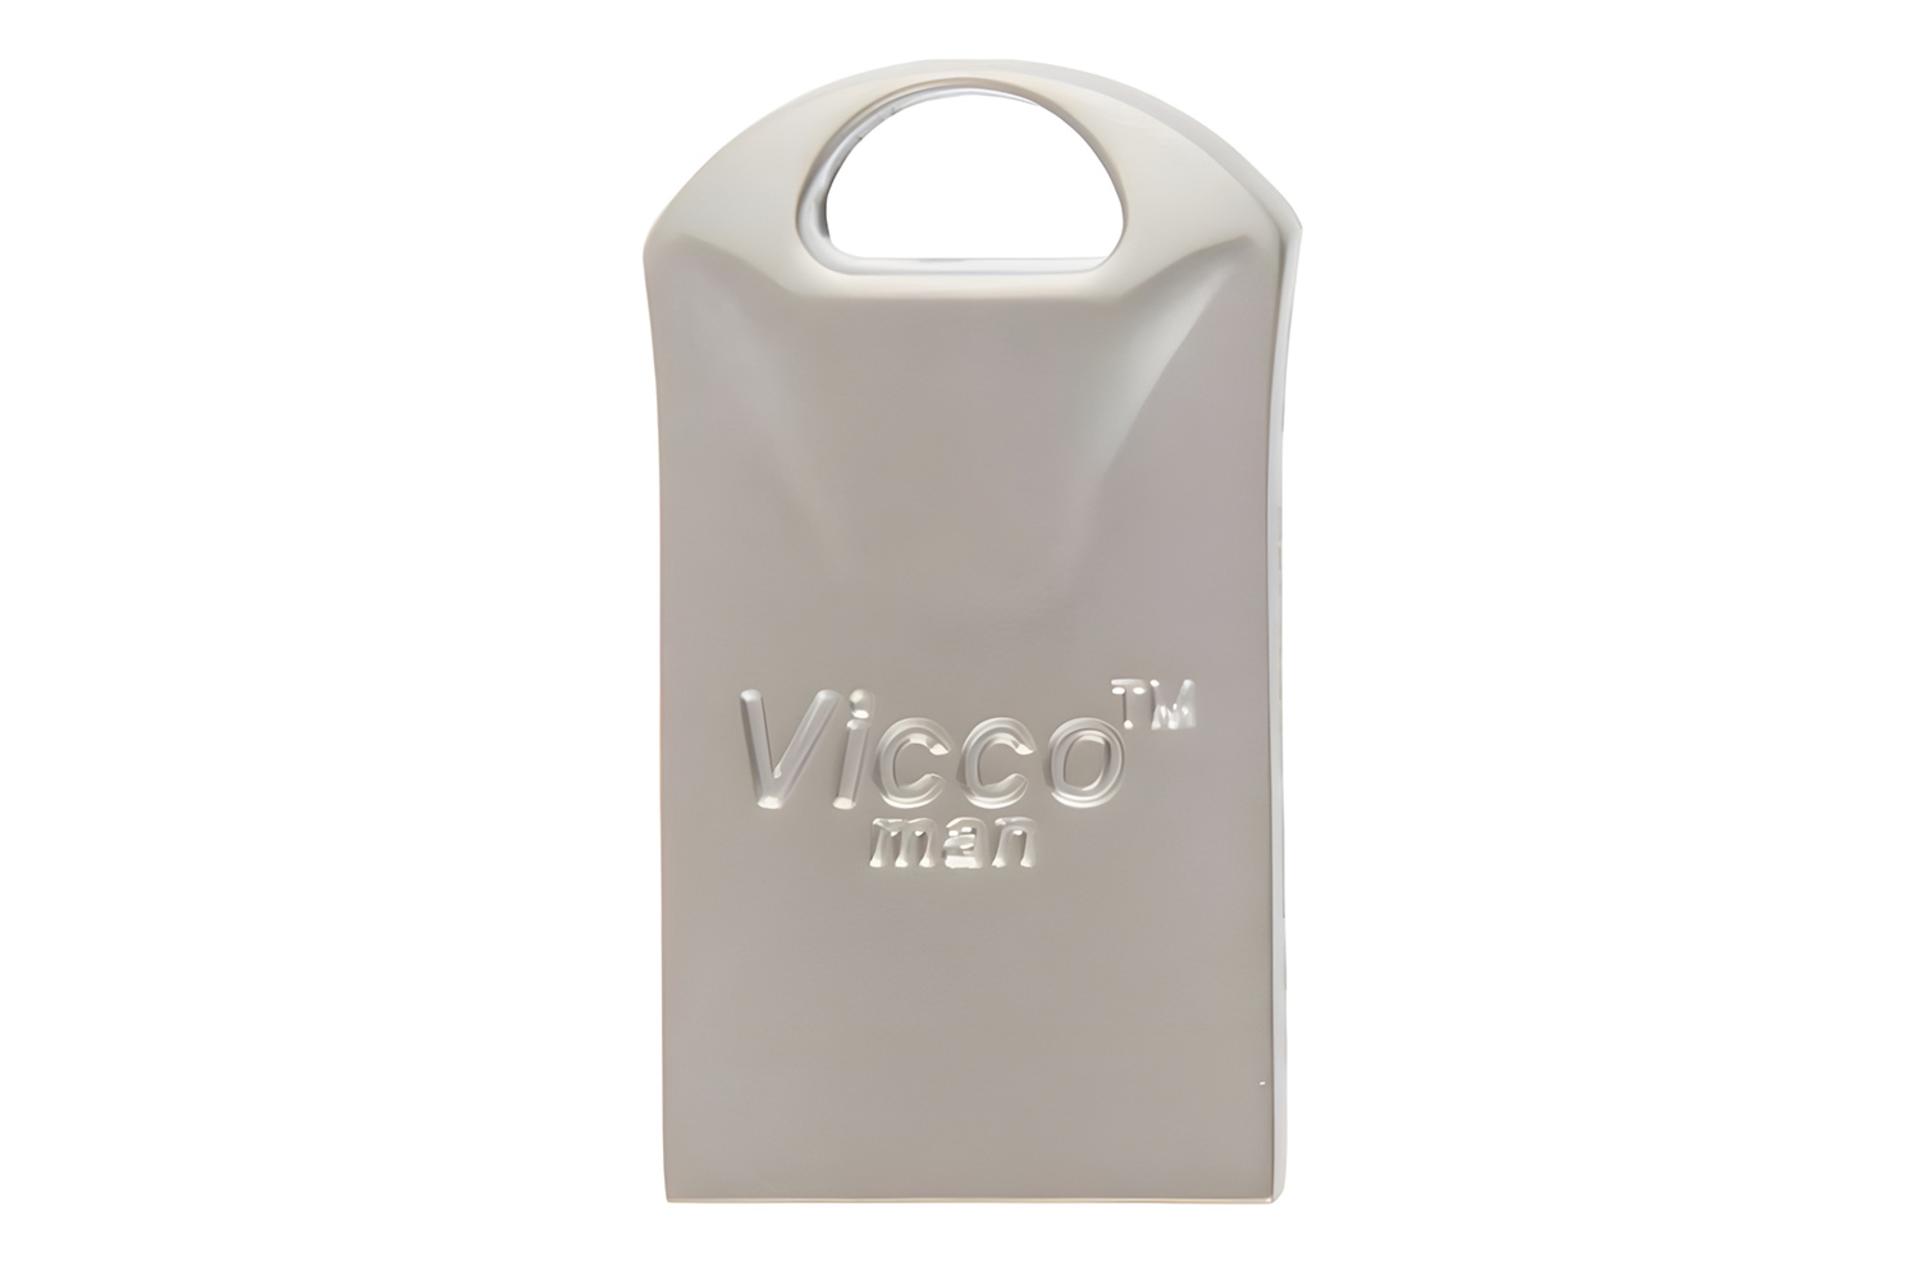 فلش مموری ویکومن Viccoman VC300 S 128GB USB 3.0